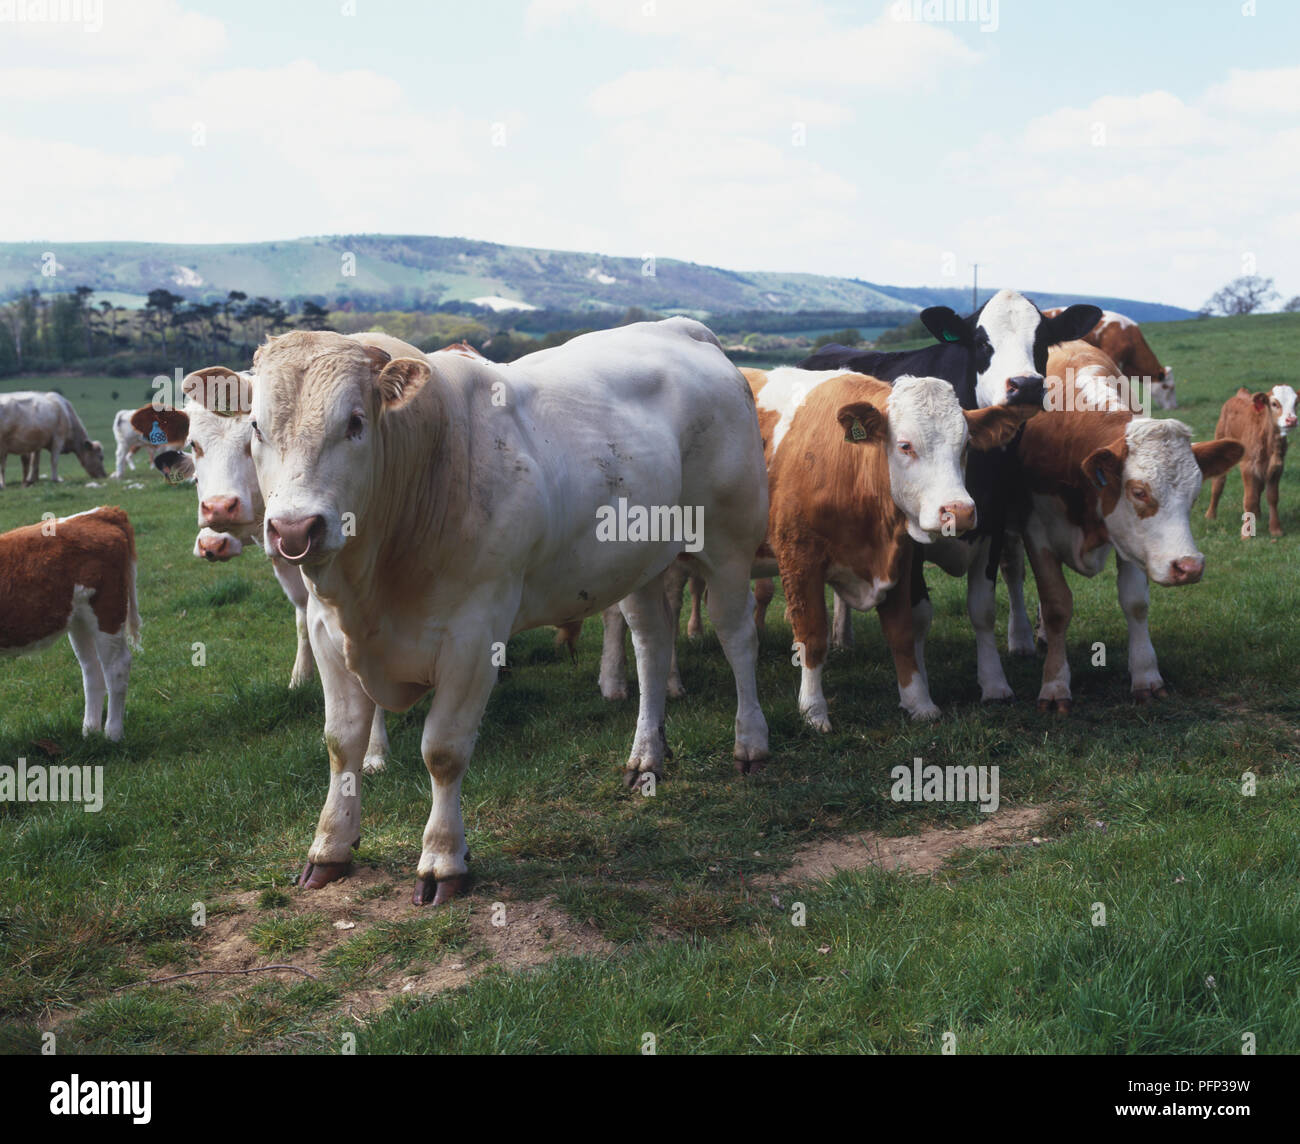 Un toro (Bos taurus) tra diverse vacche Foto Stock